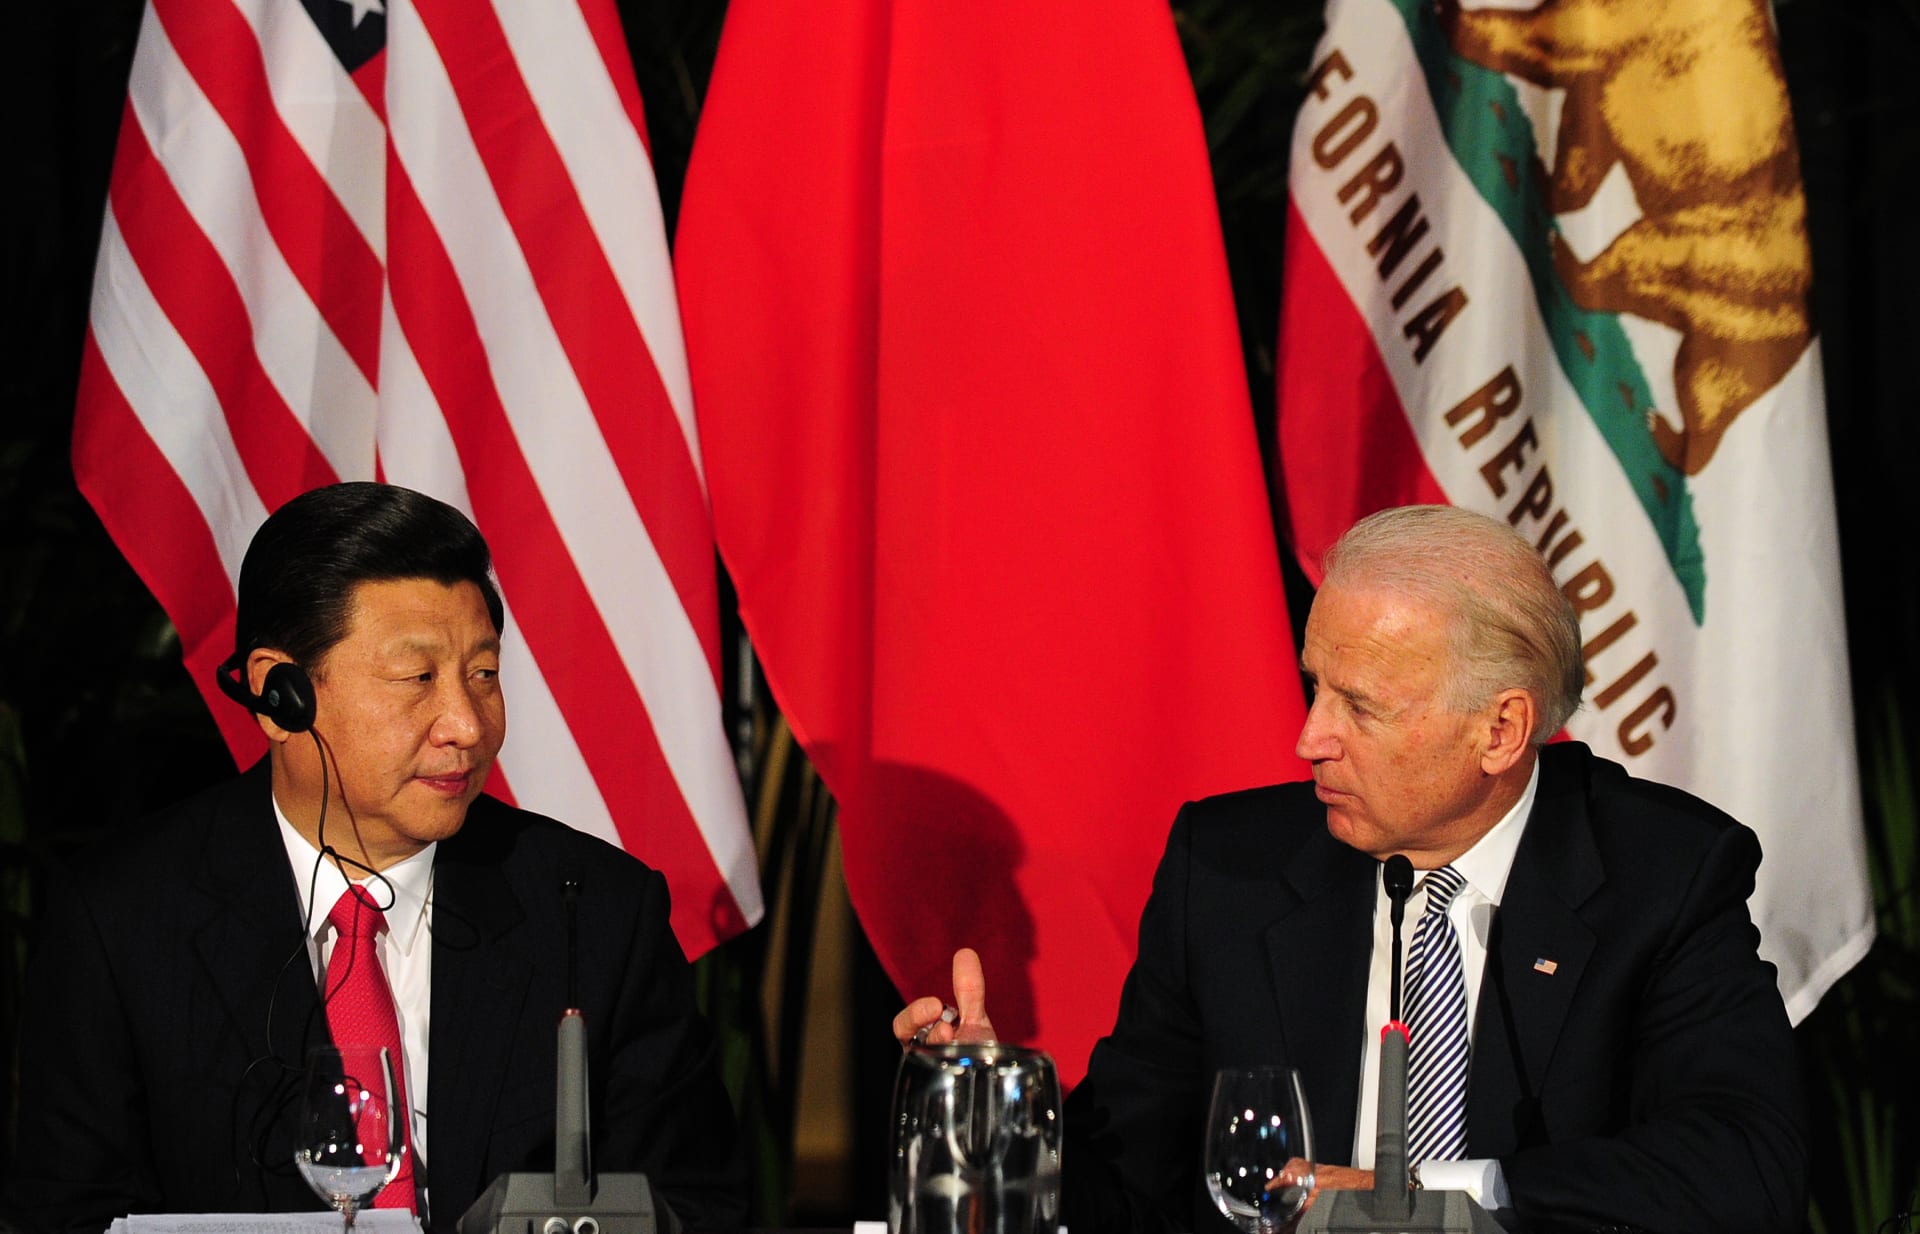 الرئيس الأمريكي جو بايدن يتحدث إلى نظيره الصيني شي جين بينغ خلال اجتماع في لوس أنجلوس، 17 فبراير 2012 في كاليفورنيا.